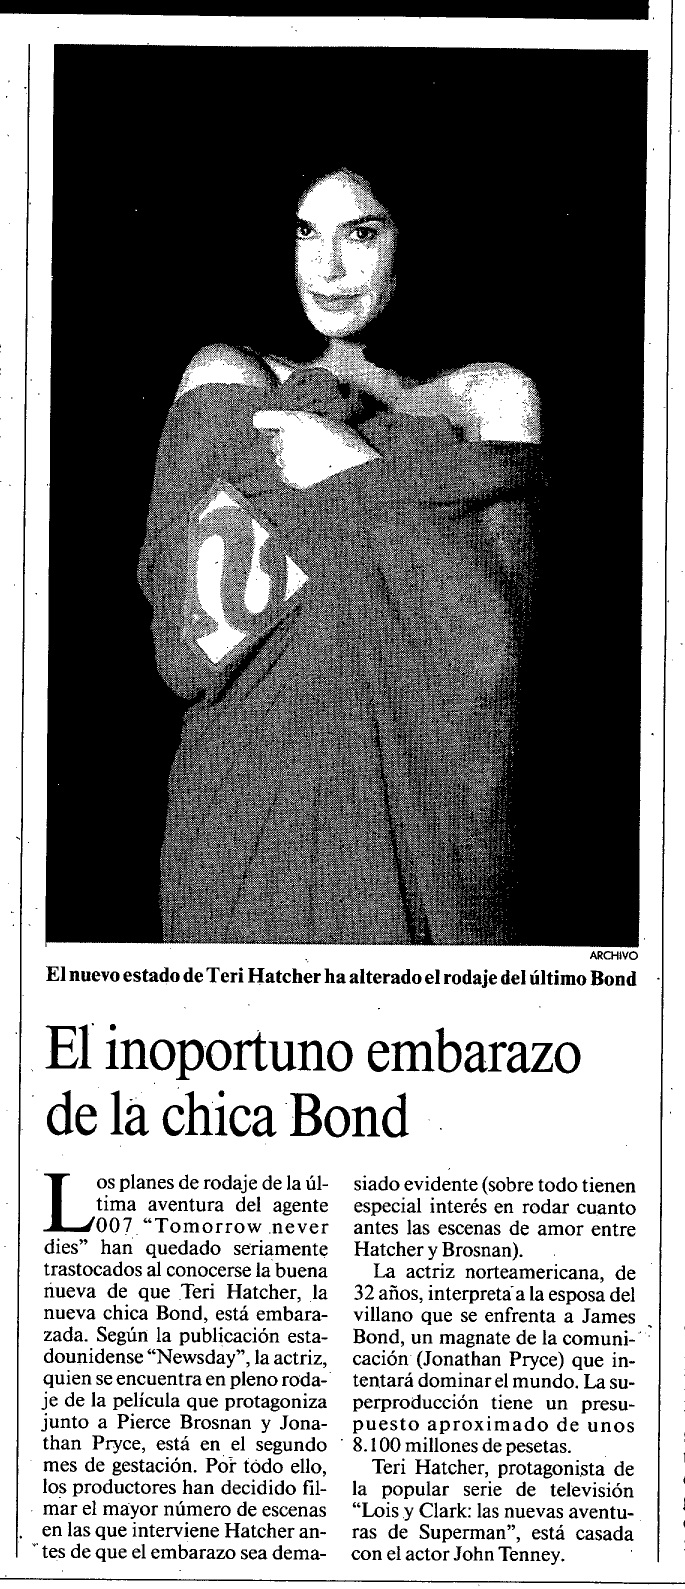 18 1997 05 06 La Vanguardia Revista 005 Embarazo